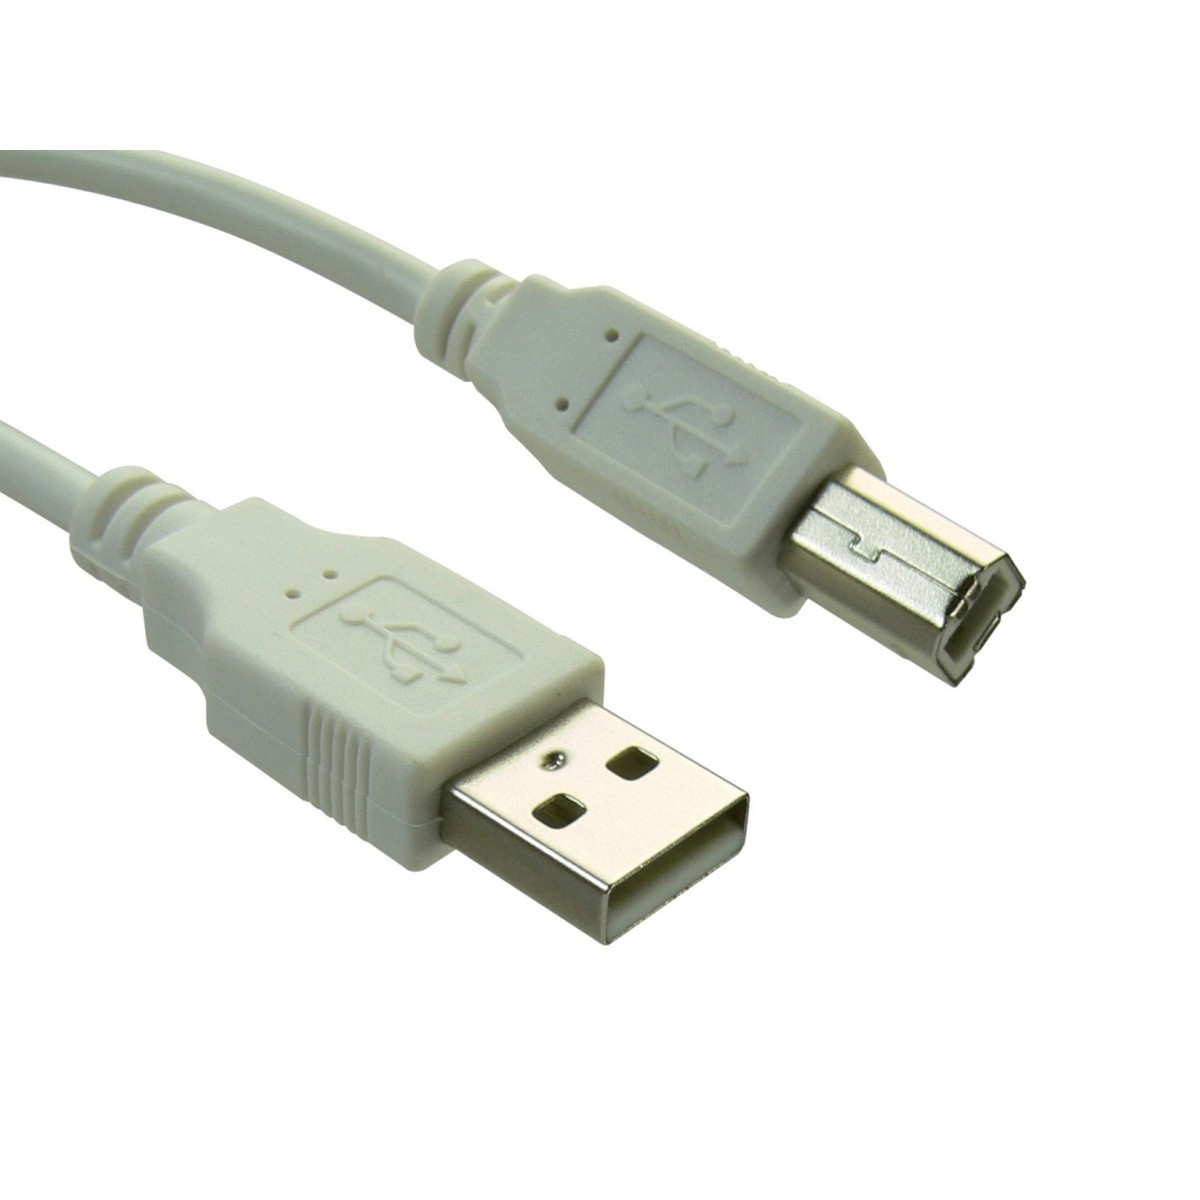 Sandberg USB 2.0 A to B Printer Cable | OcUK